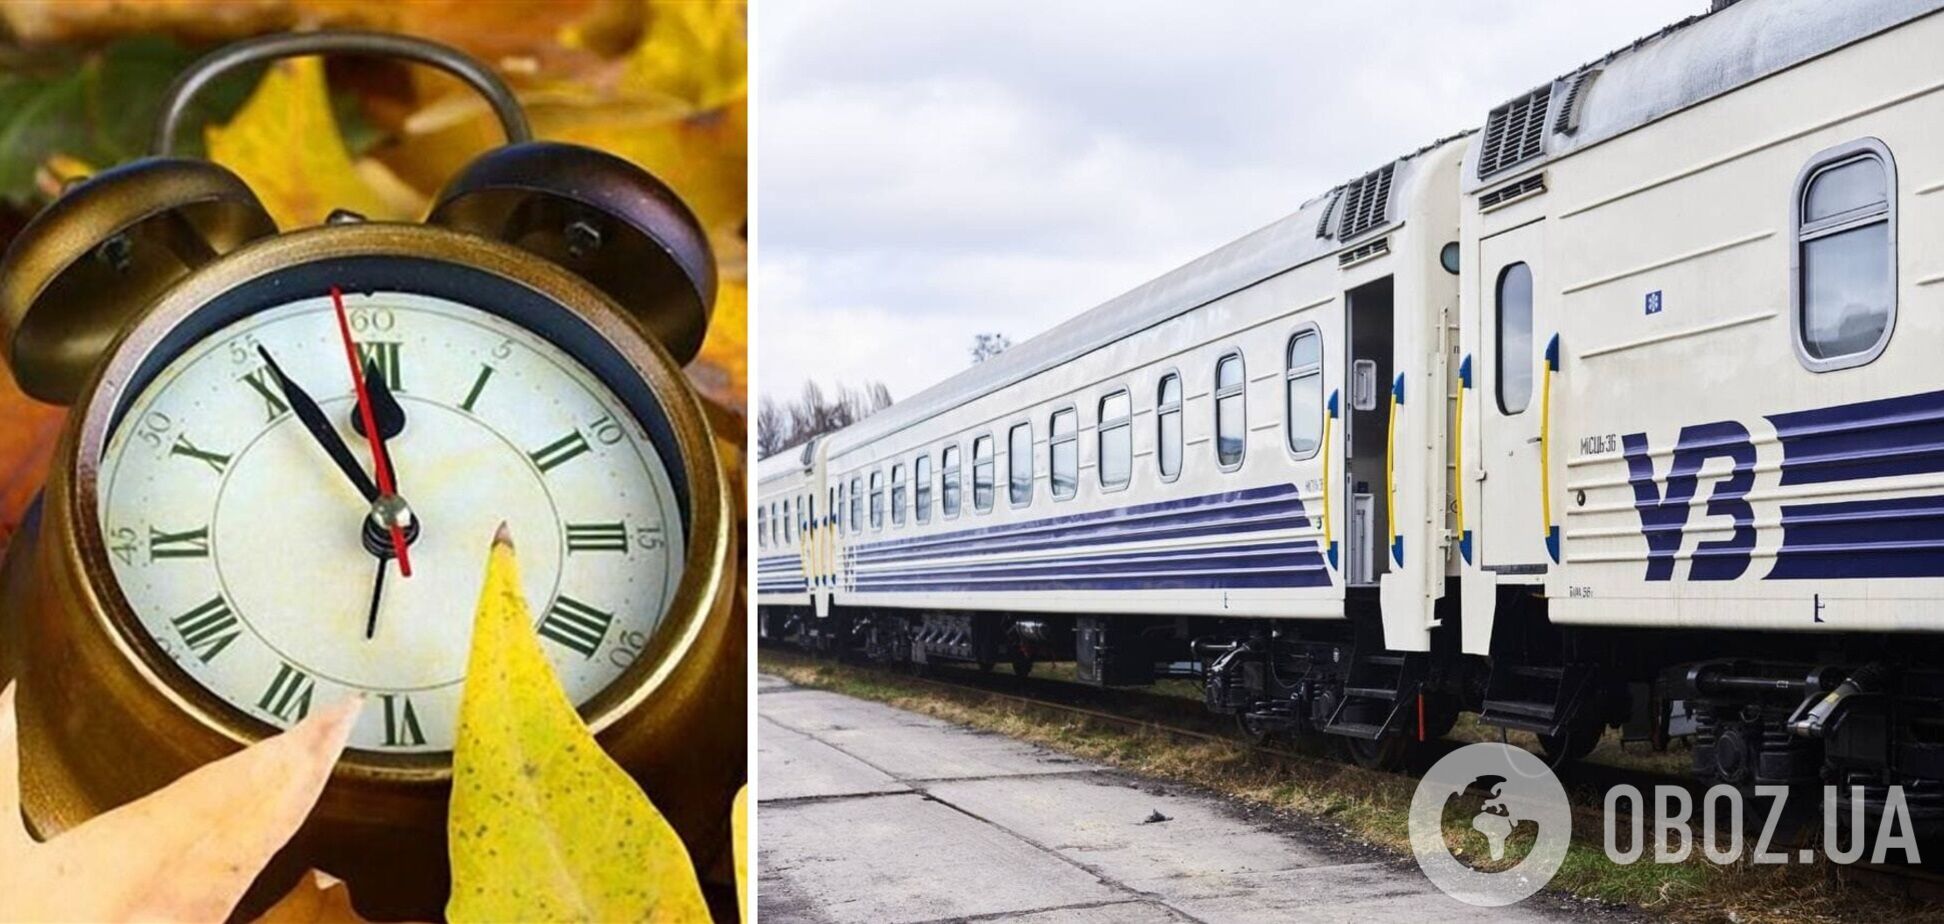 Час відправлення та прибуття поїздів вже вказується у квитках з урахуванням переходу на зимовий час 